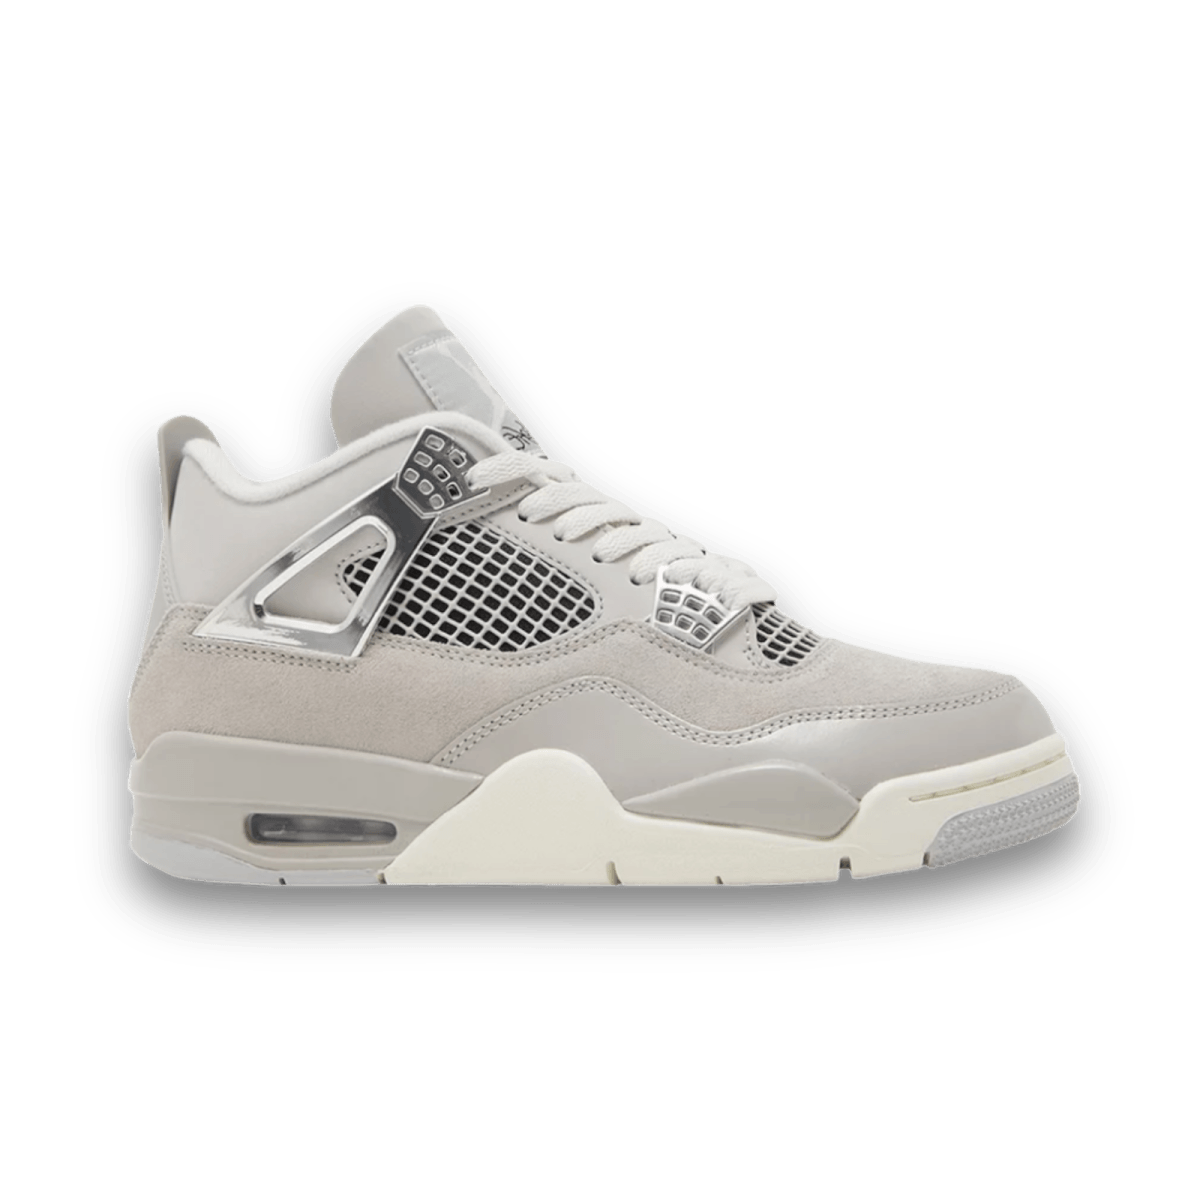 Air Jordan 4 Retro 'Frozen Moments' - Women - Mid Sneaker - Jawns on Fire Sneakers & Streetwear